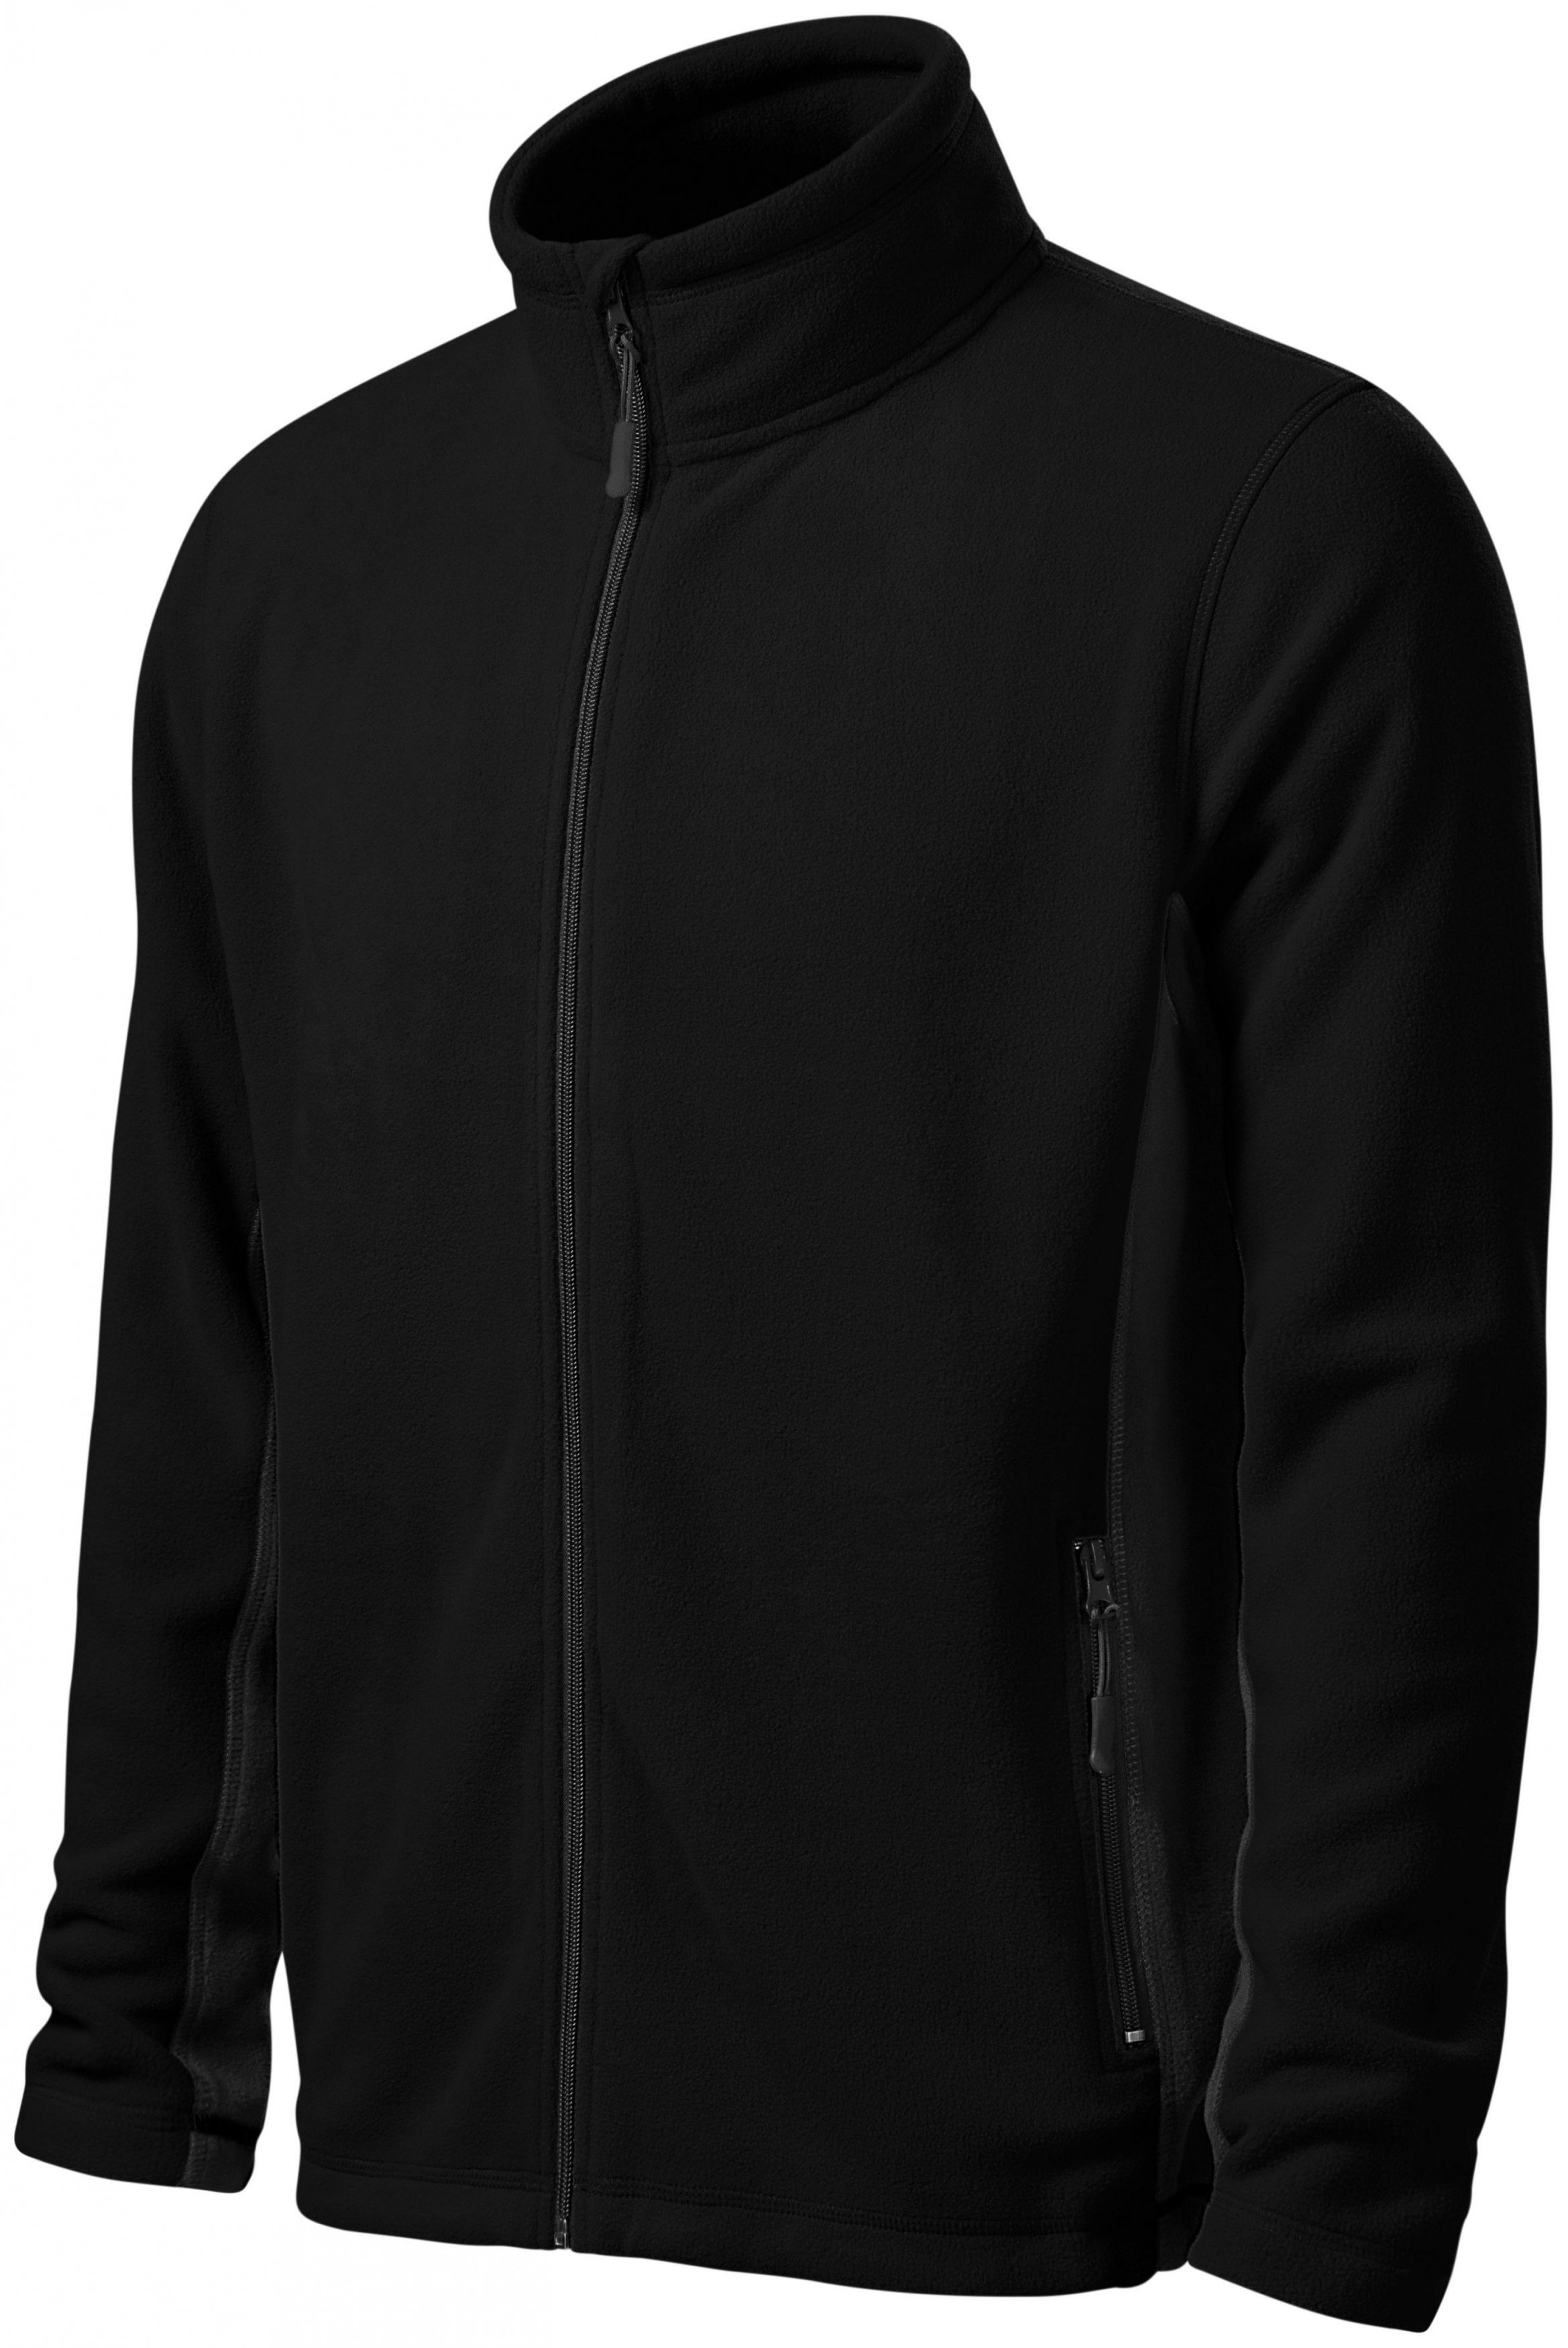 Pánska fleecová bunda kontrastná, čierna, 4XL